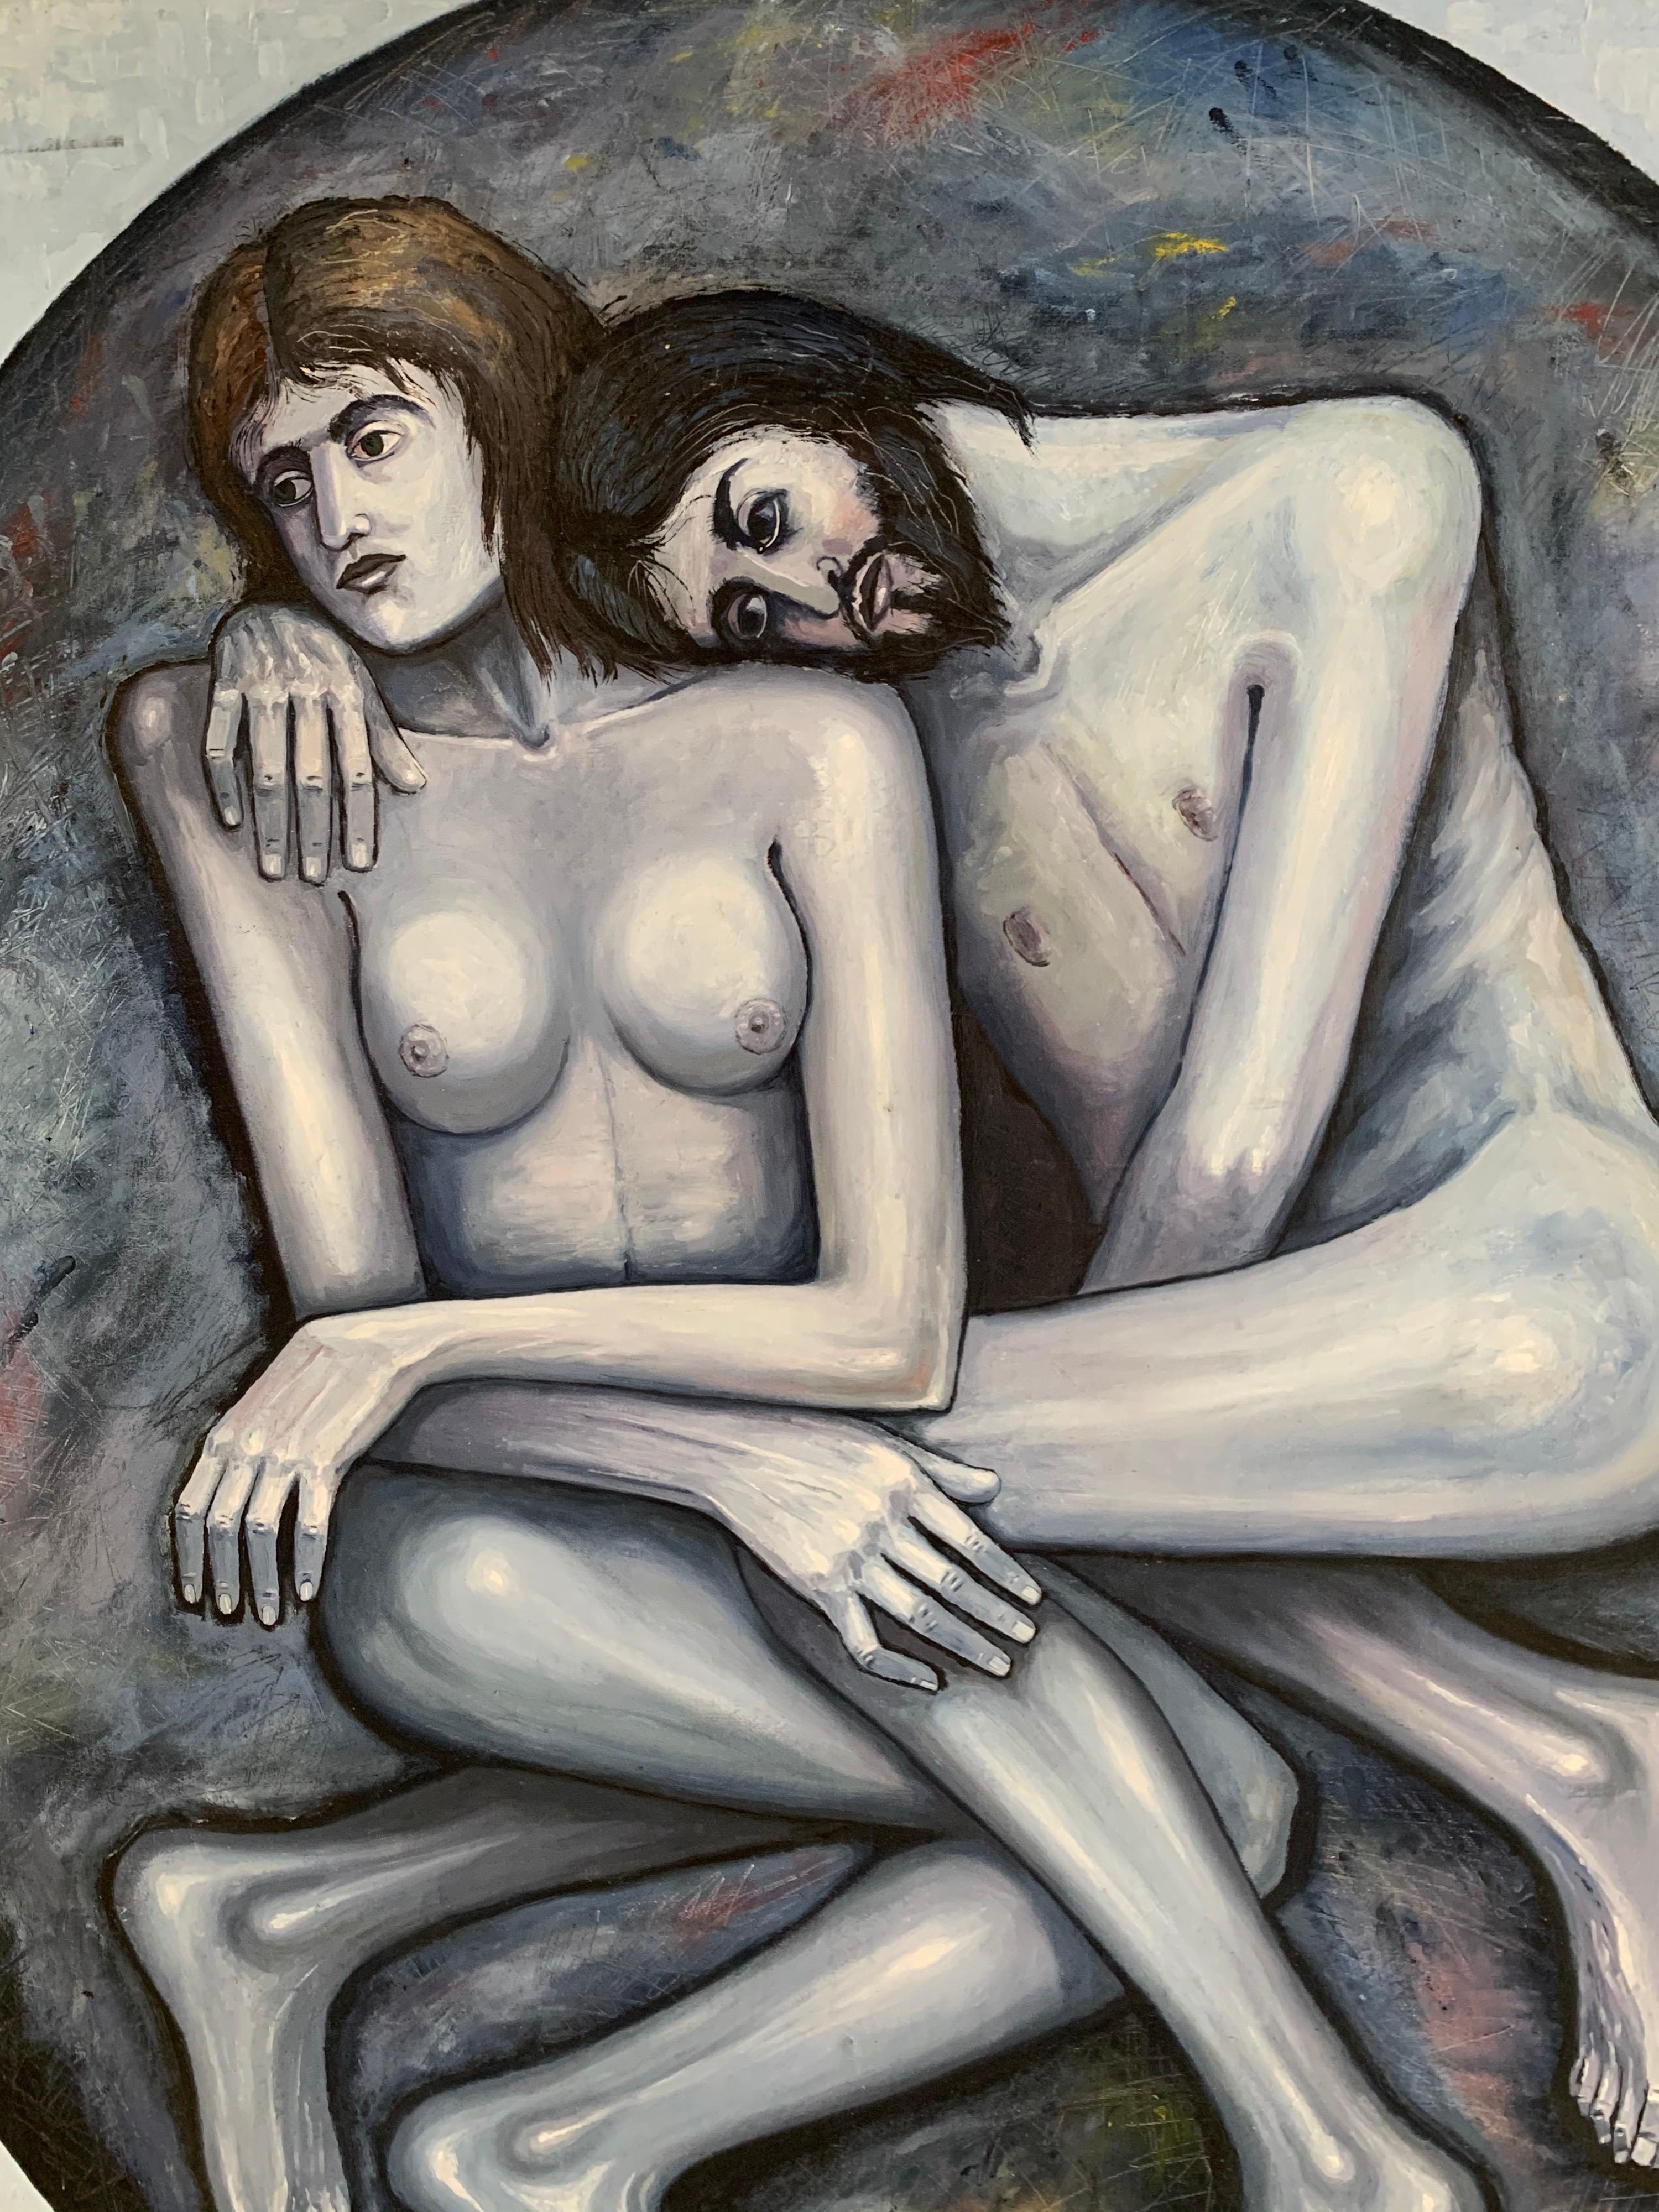 Großes französisches Ölgemälde auf Leinwand, 20. Jahrhundert, Adam & Eve, grau, schwarz und weiß, Oval (Grau), Nude Painting, von French Expressionist